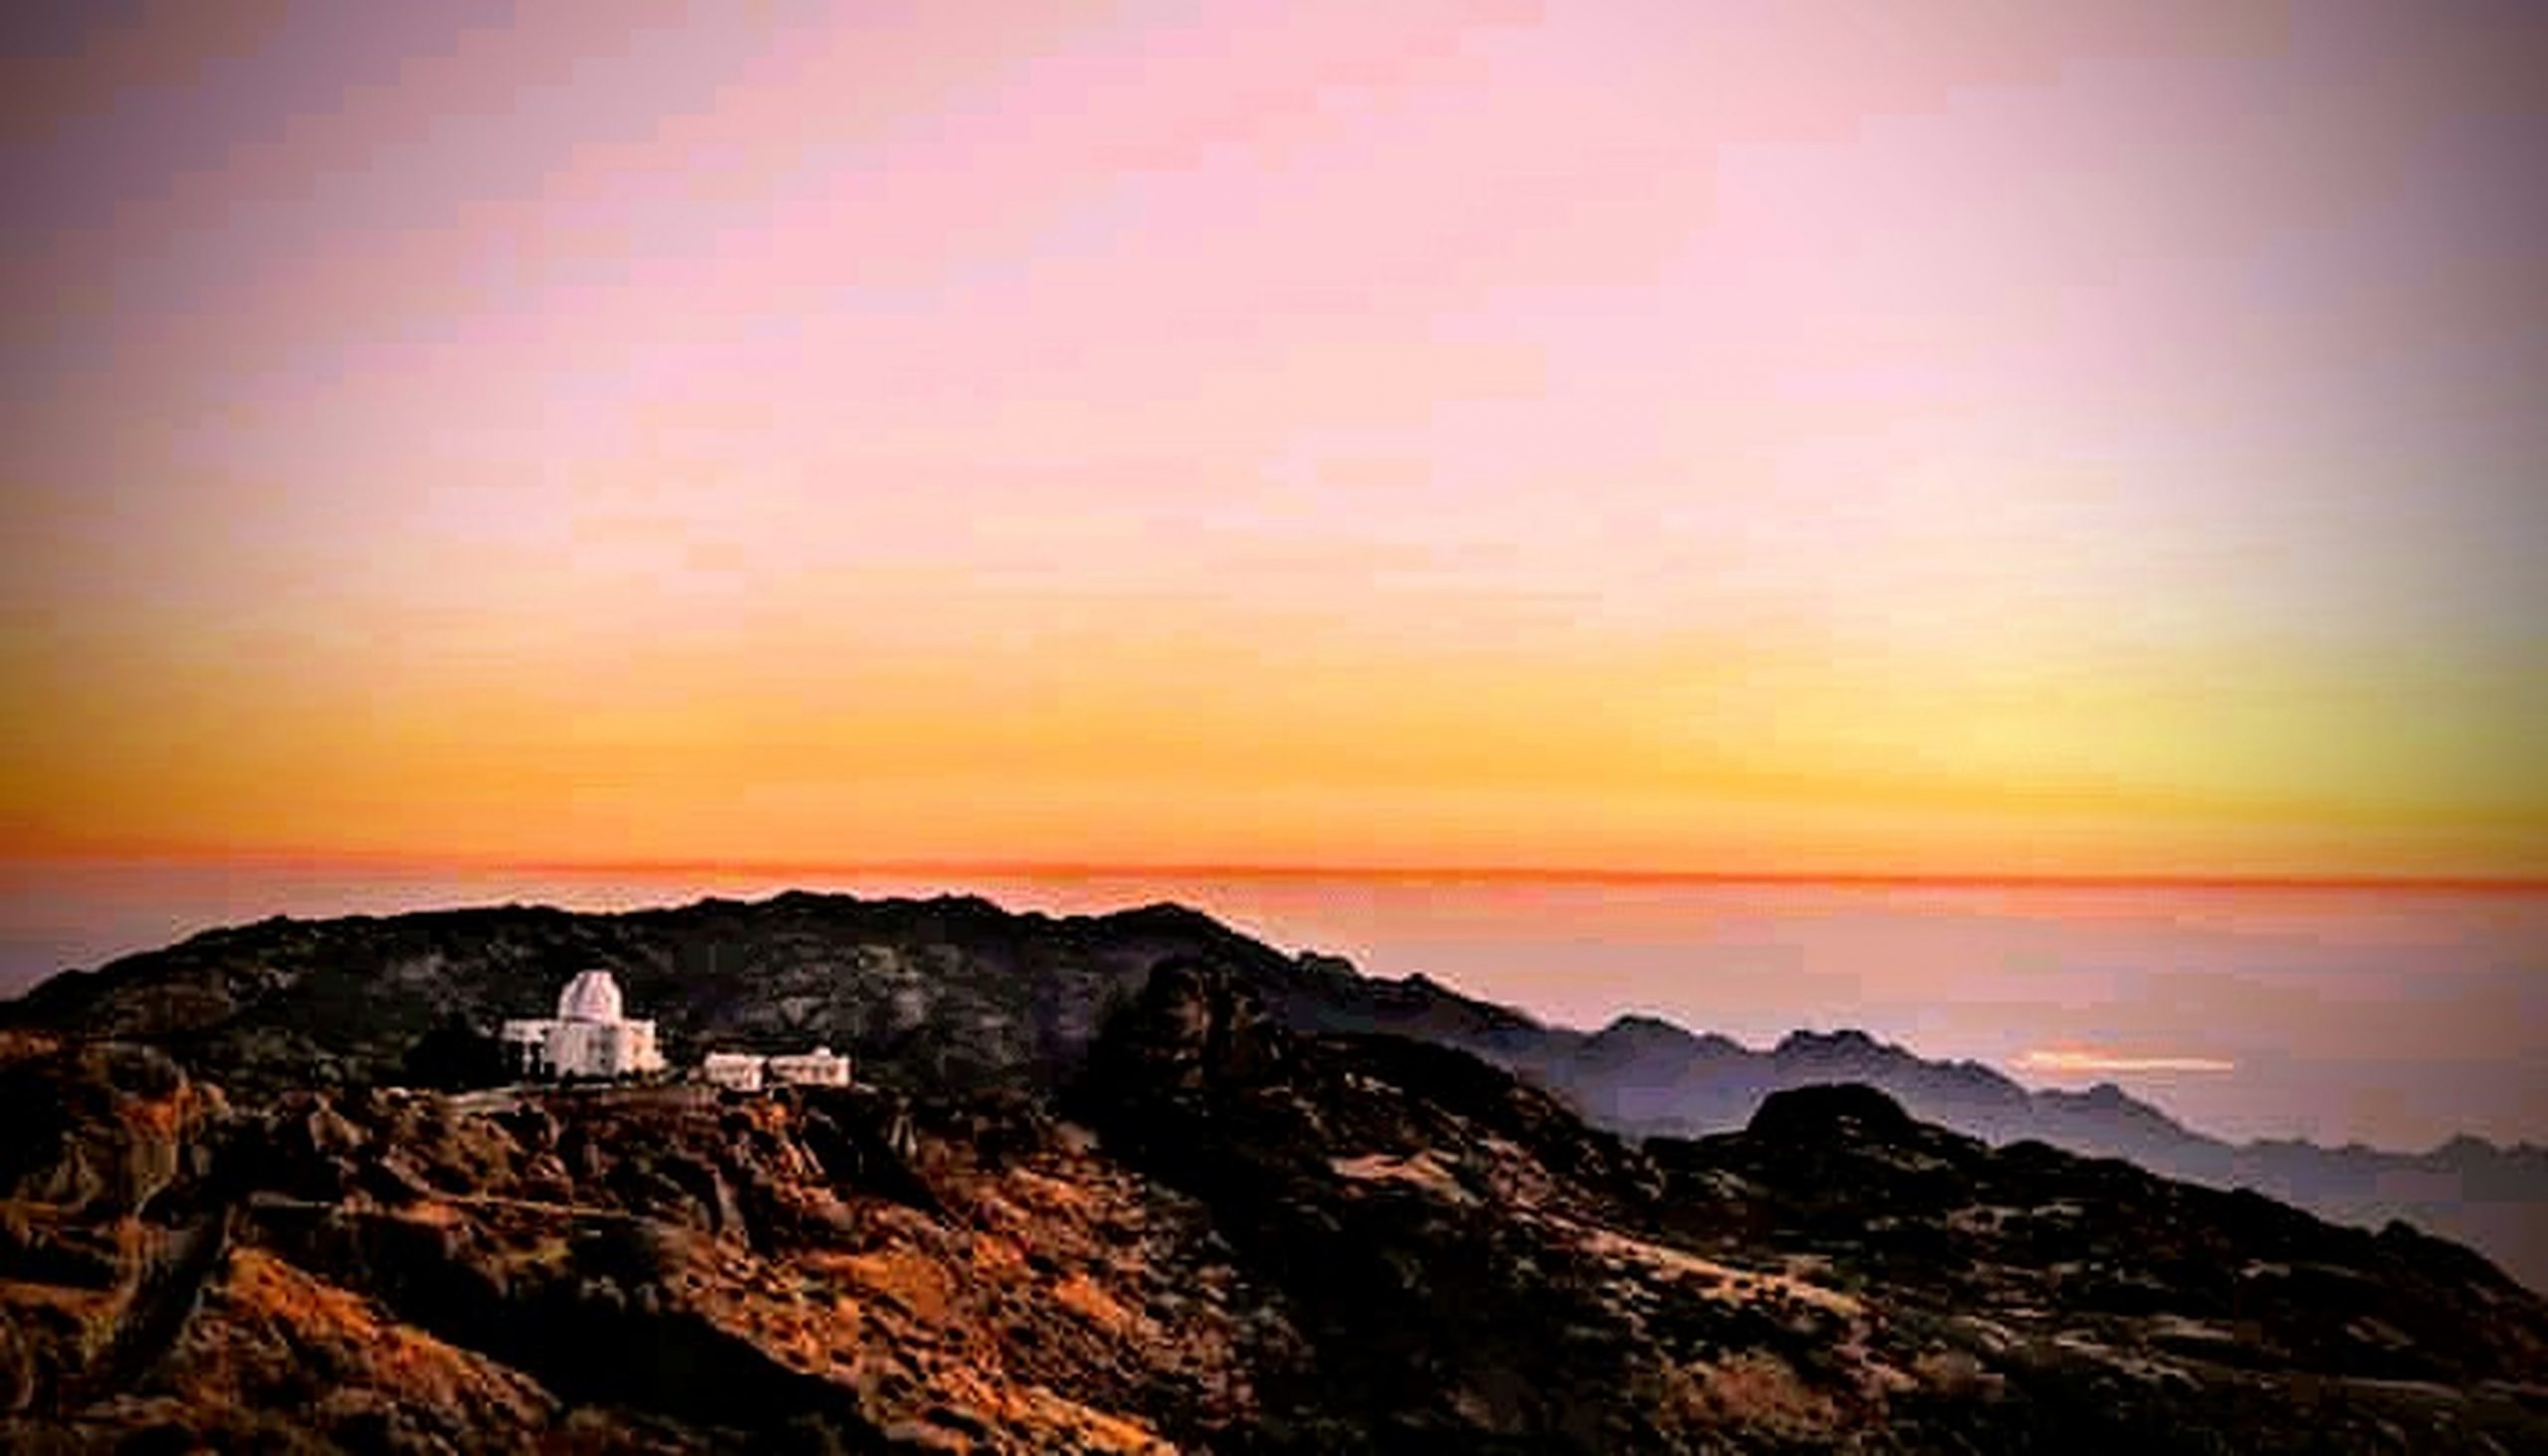 Sunrise in Mount Abu